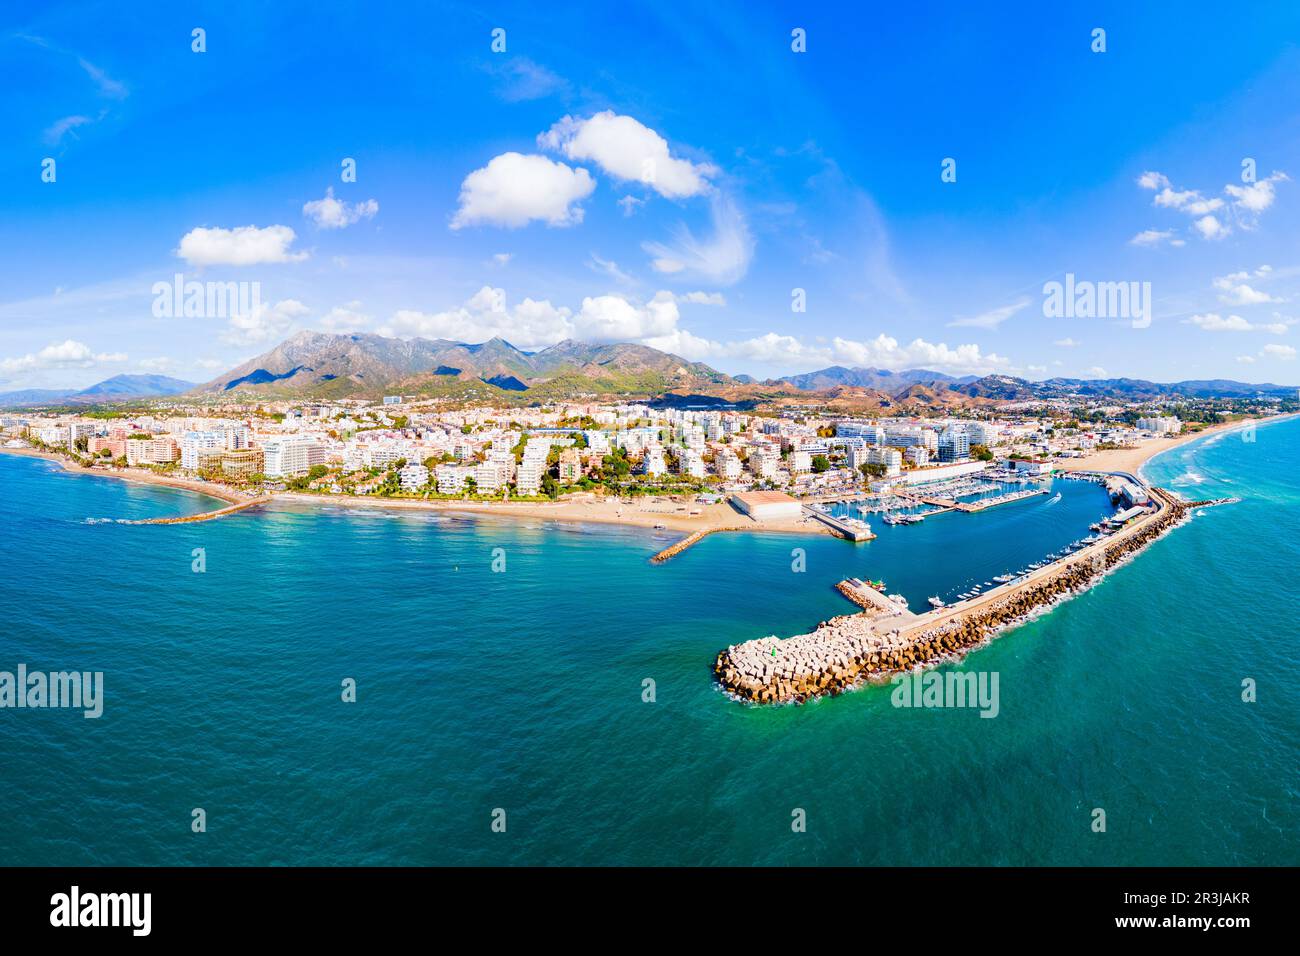 Vista panoramica aerea del porto turistico di Marbella. Marbella è una città della provincia di Malaga in Andalusia, Spagna. Foto Stock